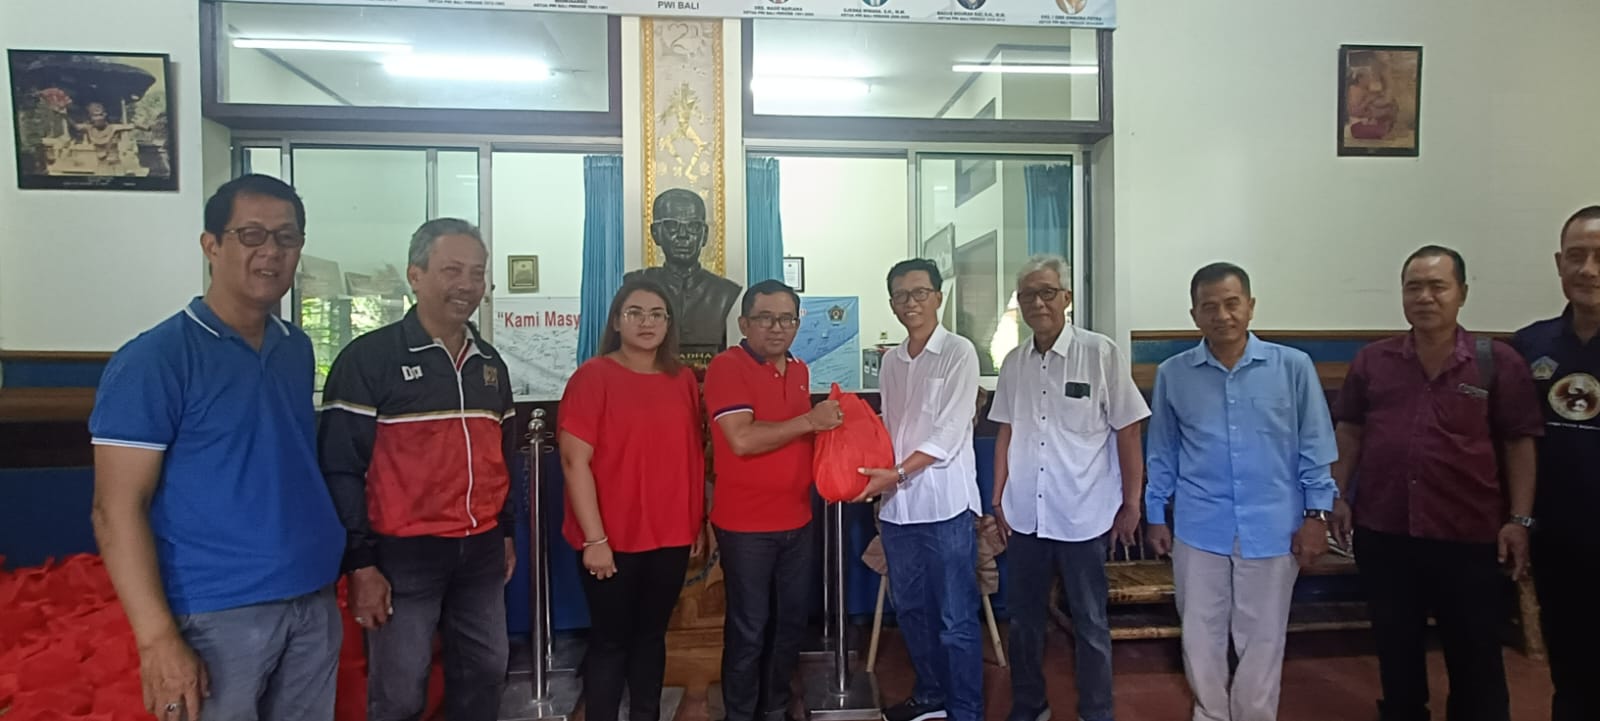 Anggota DPR RI, Agung Rai Wirajaya secara simbolis menyerahkan sembako sebanyak 250 paket kepada masyarakat yang membutuhkan, melalui PWI Bali, yang diterima langsung Ketua PWI Bali, IGMB Dwikora Putra pada Rabu 19 April 2023 di Gedung PWI Bali. 